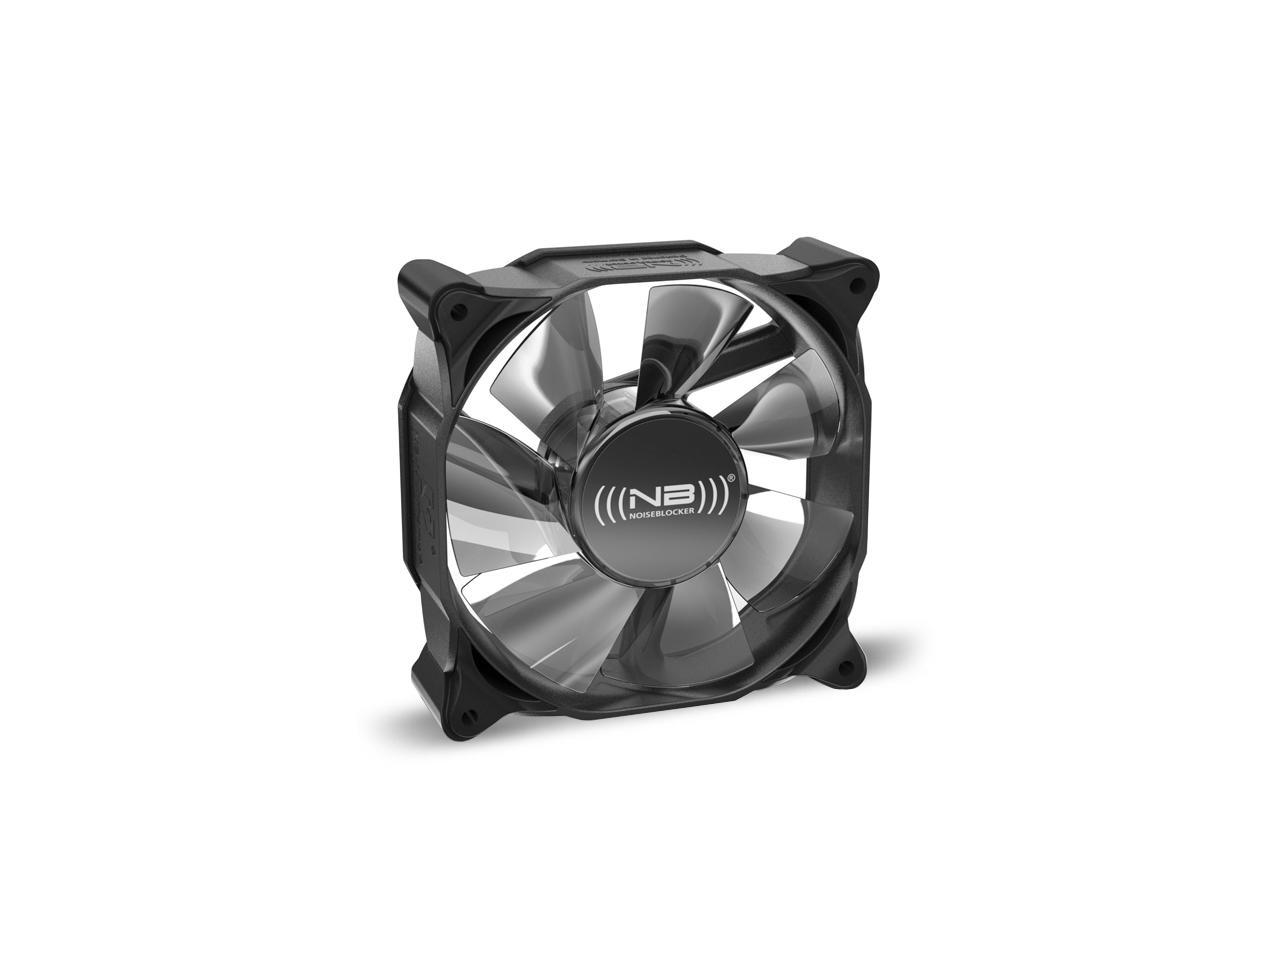 Noiseblocker NB-Multiframe M8-3 80x80x25mm Low Noise Fan, 2200rpm, 19.2 dBA